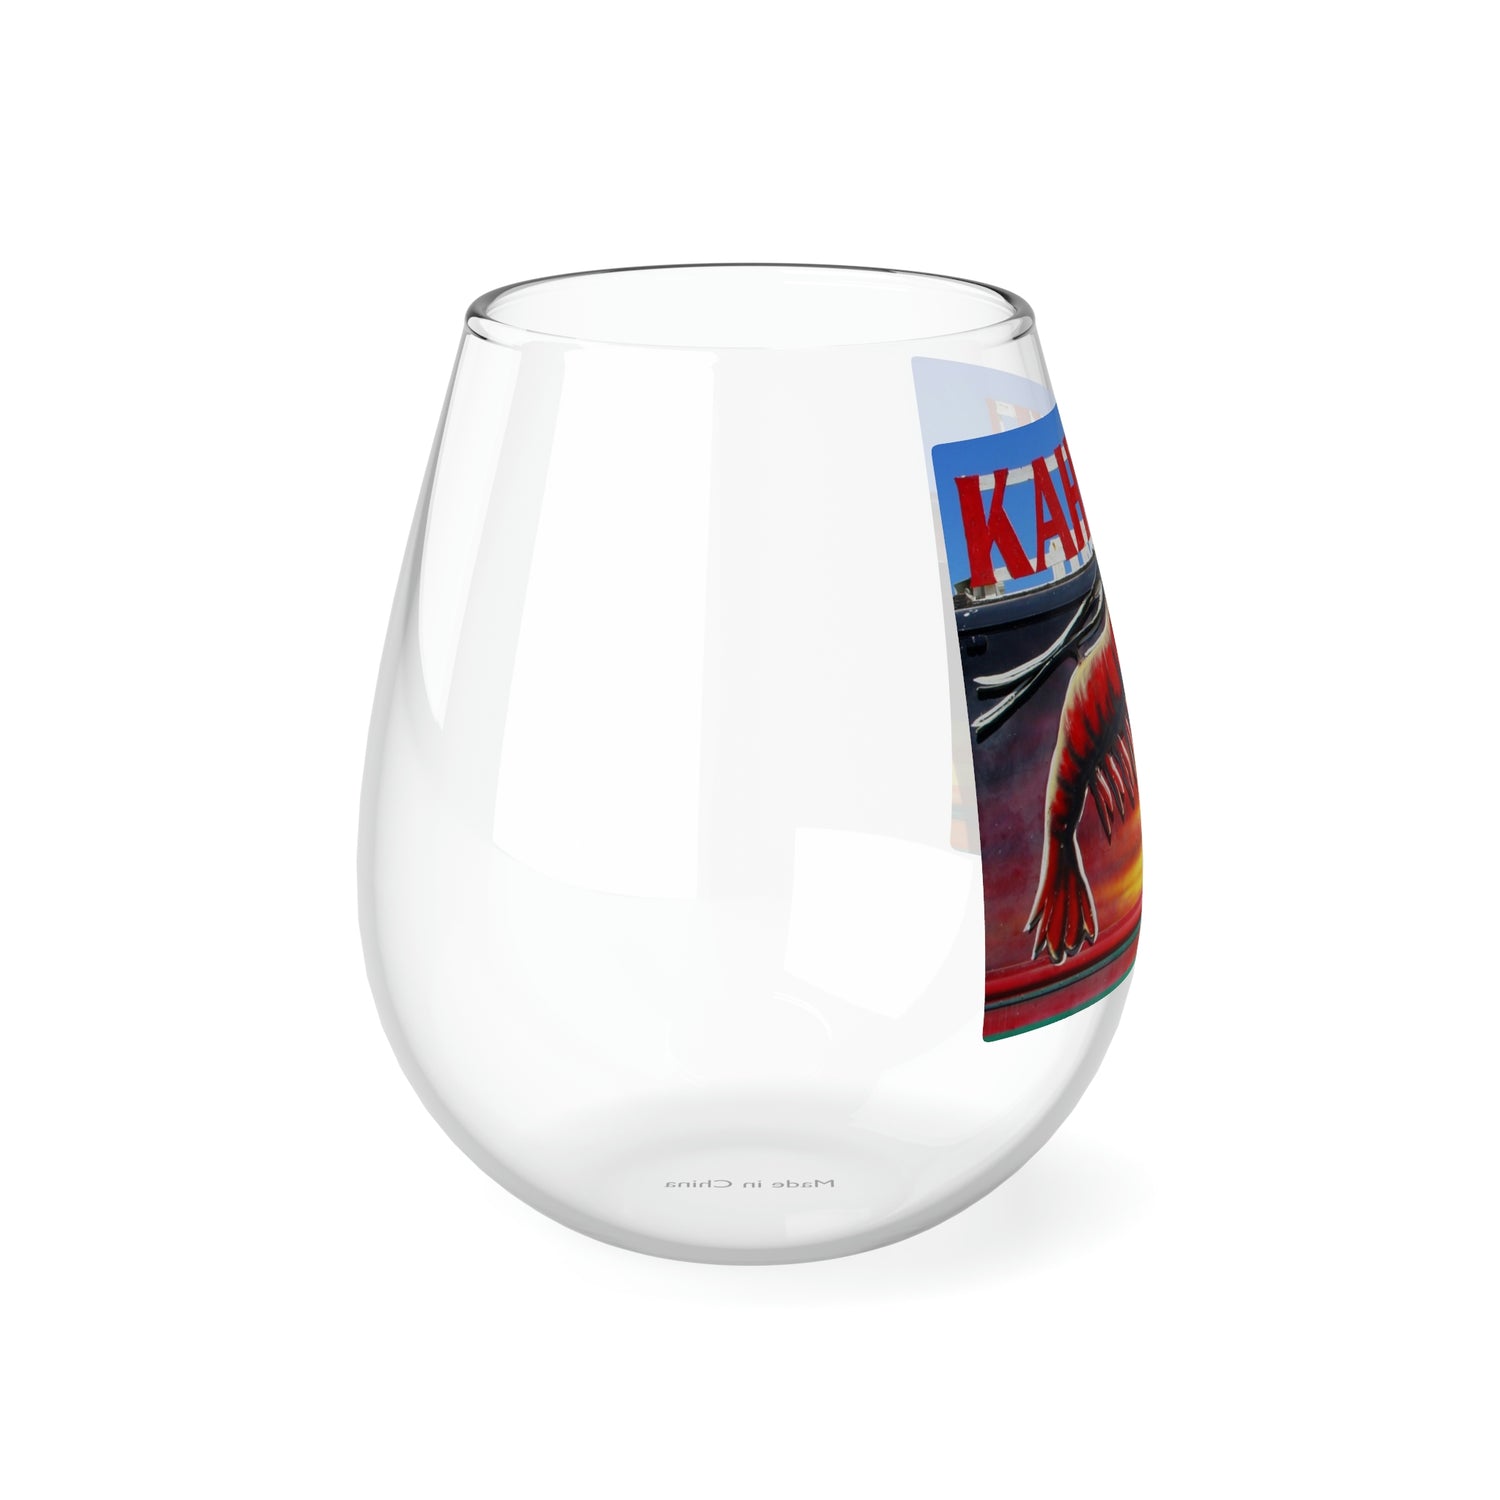 Kahuku Kai - Stemless Wine Glass, 11.75 oz - Fry1Productions